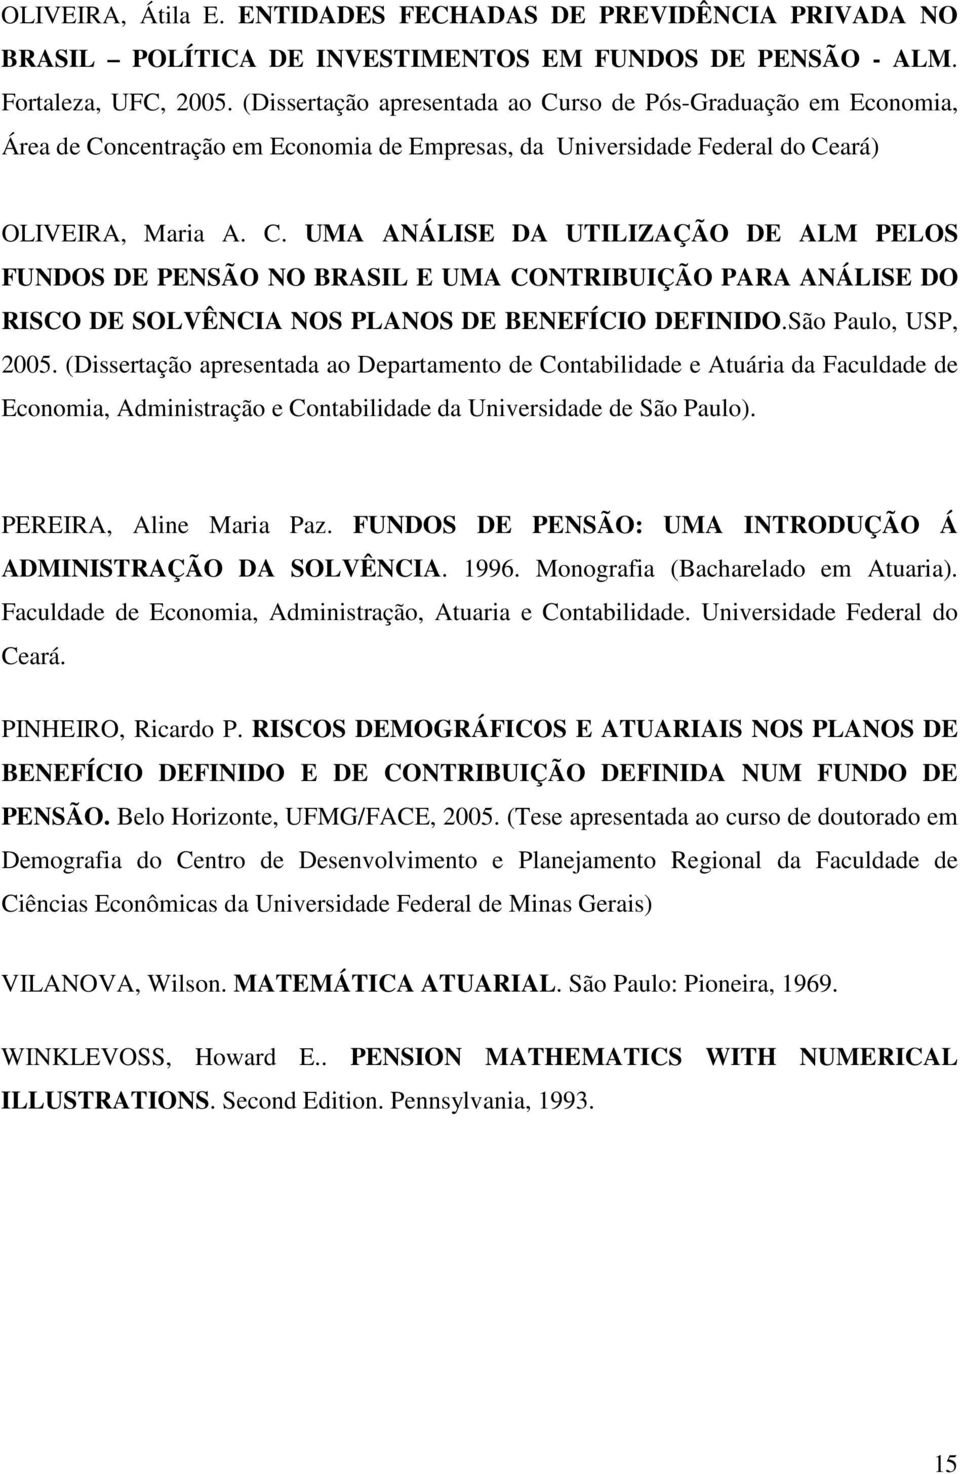 São Paulo, USP, 2005. (Dissertação apresentada ao Departamento de Contabilidade e Atuária da Faculdade de Economia, Administração e Contabilidade da Universidade de São Paulo).